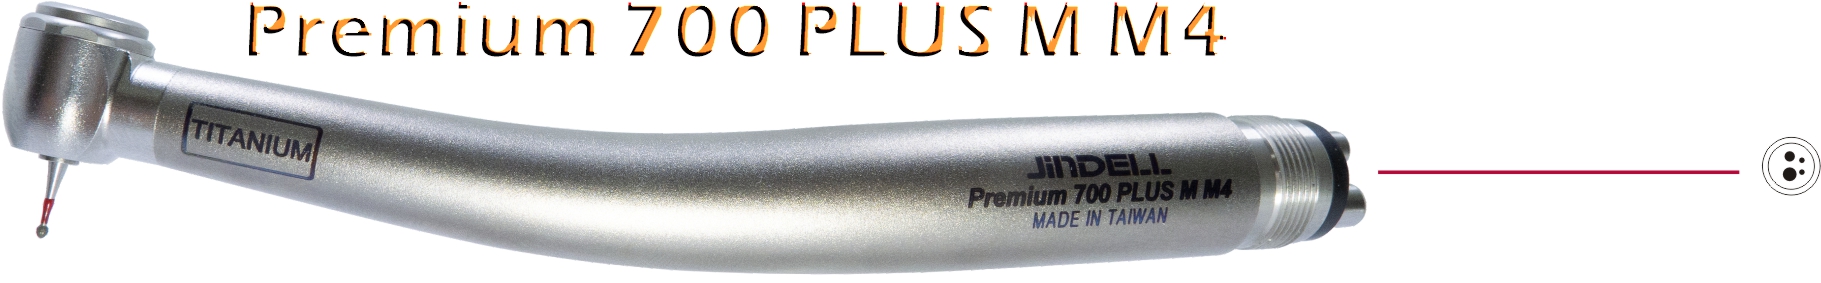 Premium 700 PLUS M M4